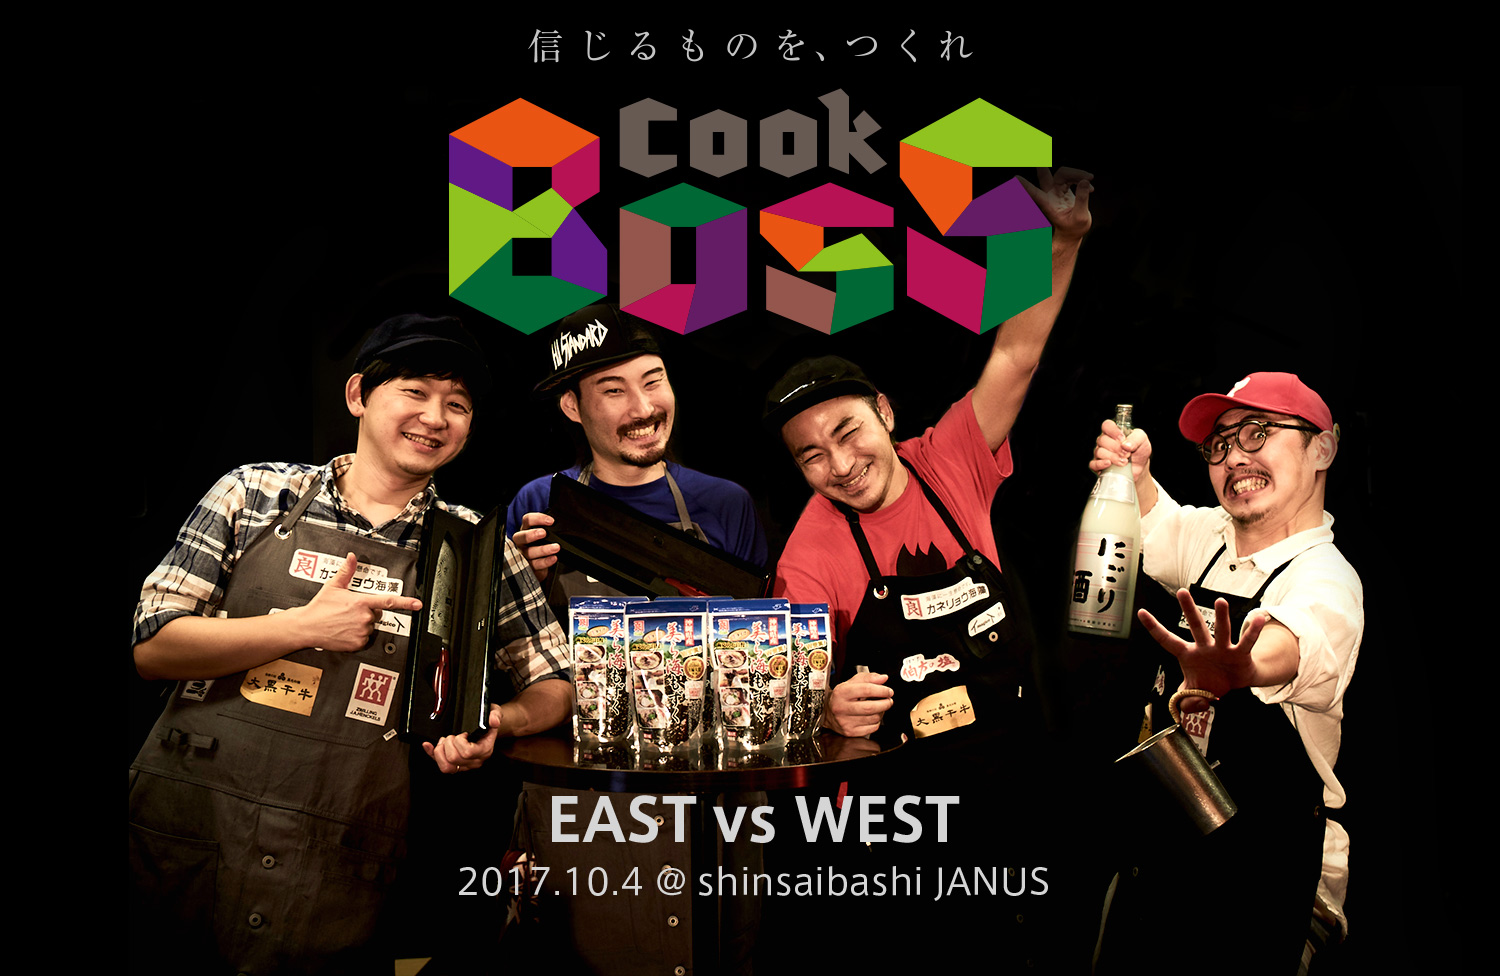 信じるものを、つくれ COOK BOSS ／ EAST VS WEST 2017.10.4 @Shinsaibashi JANUS